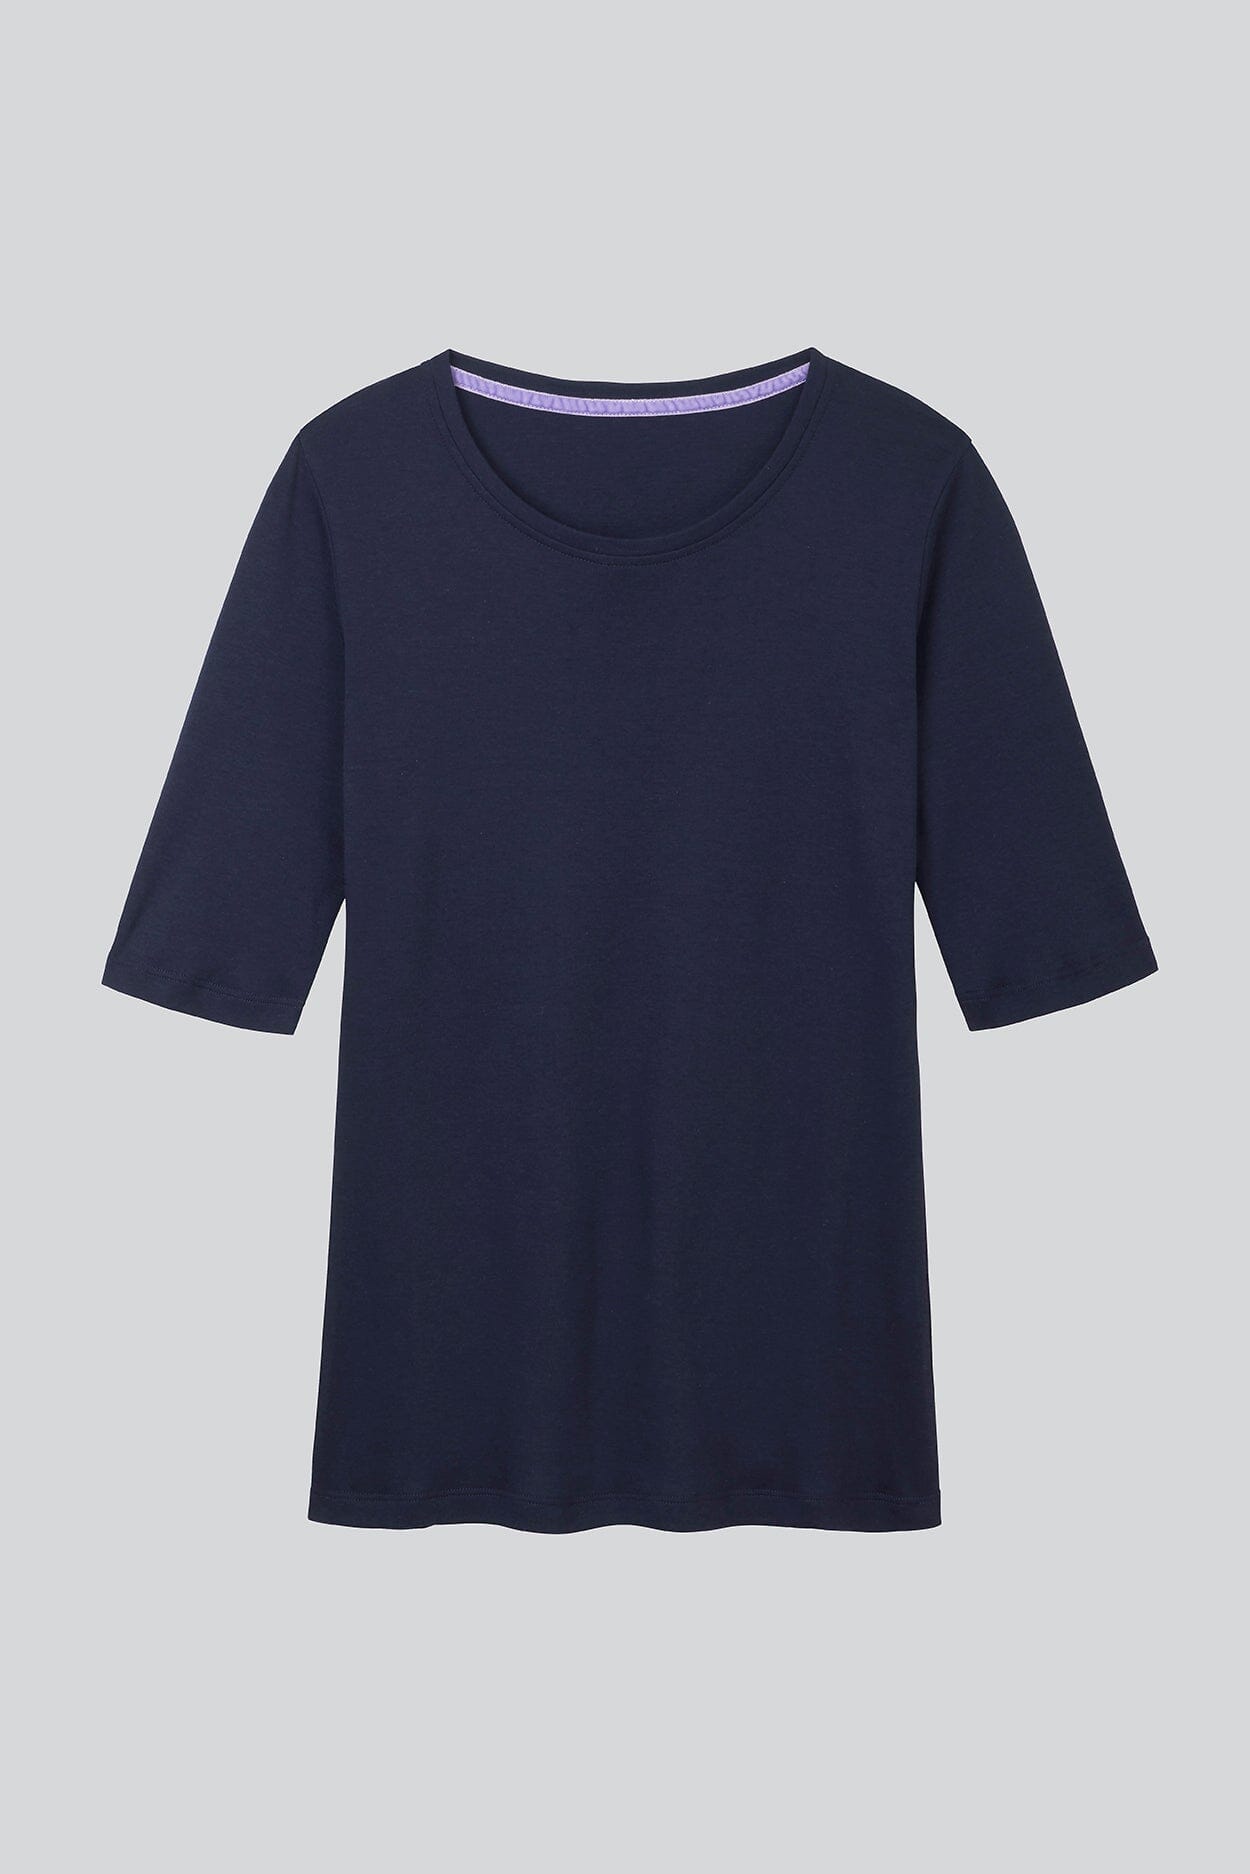 Half Sleeve Crew Neck Cotton Modal Blend T-shirt Women's Half Sleeve T-shirt Lavender Hill